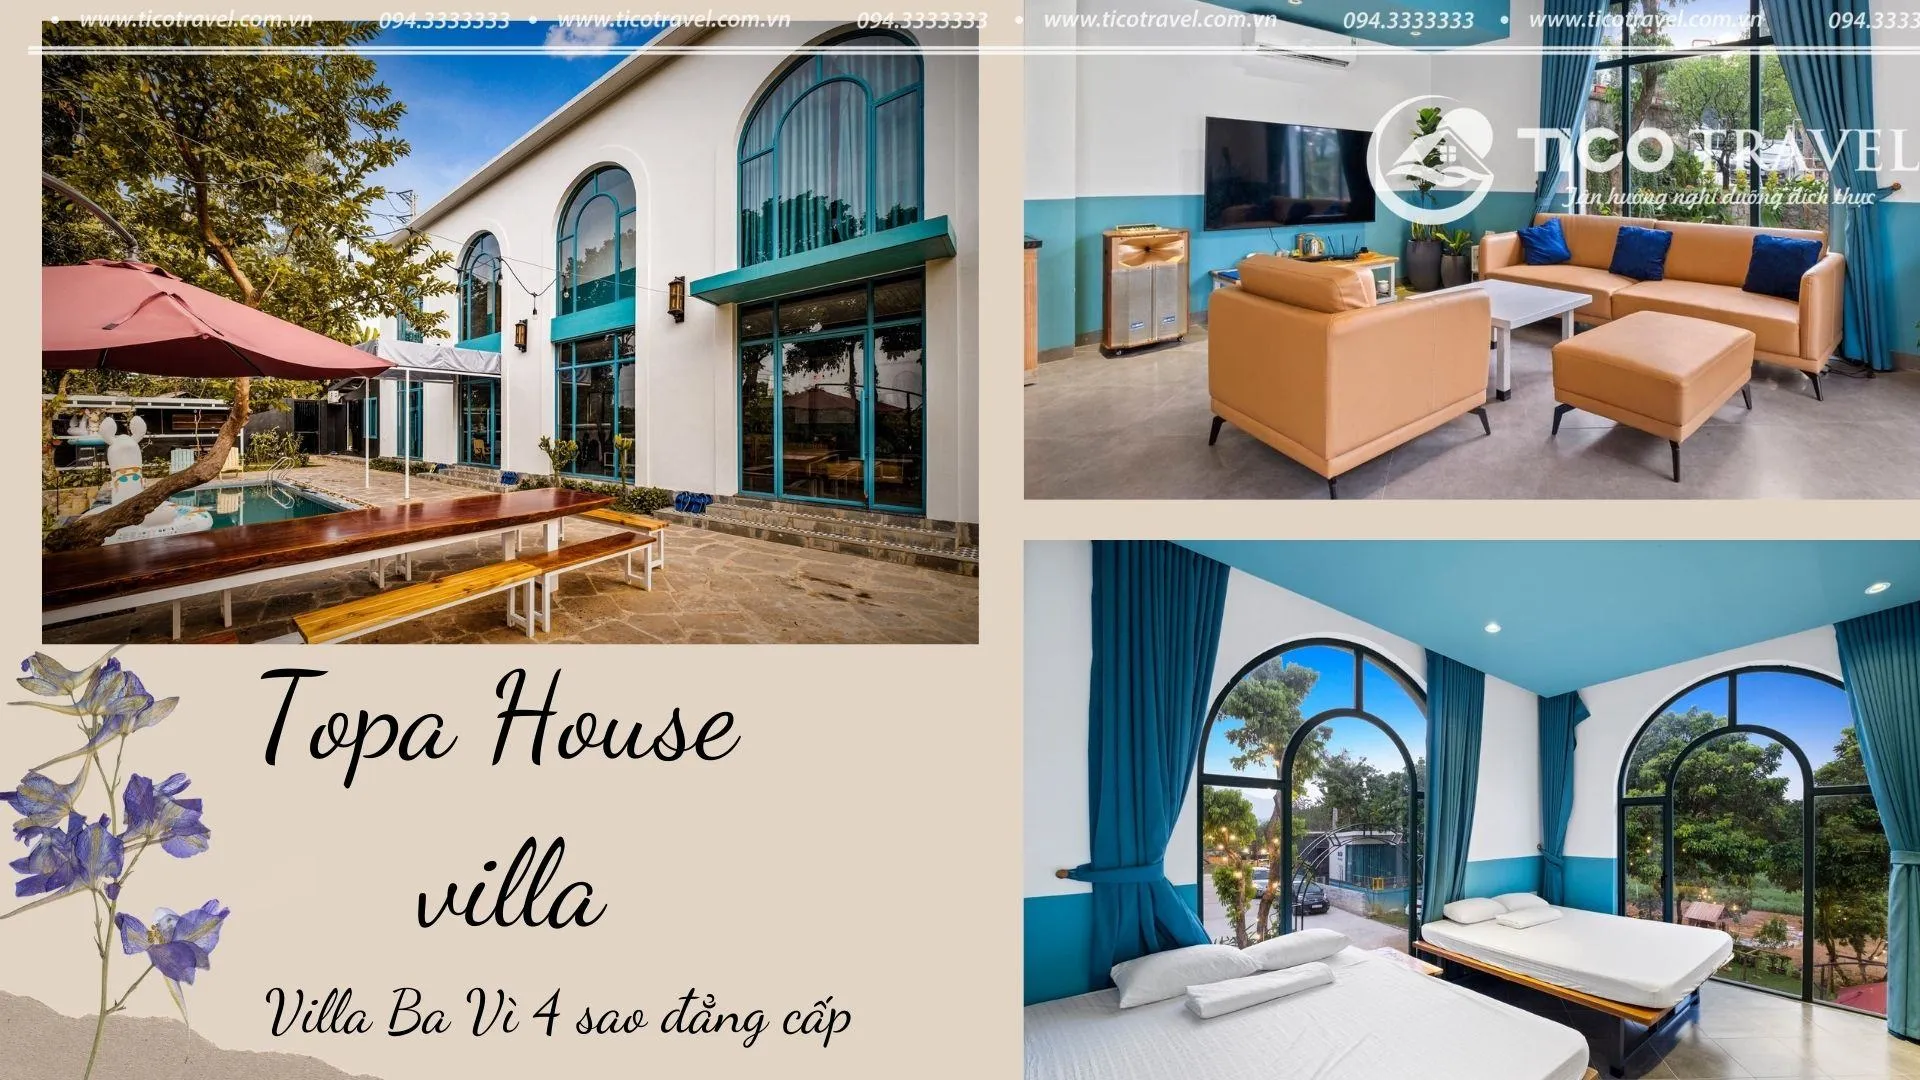 Topa house villa - villa quanh Hà Nội có thiết kế đẹp nhất